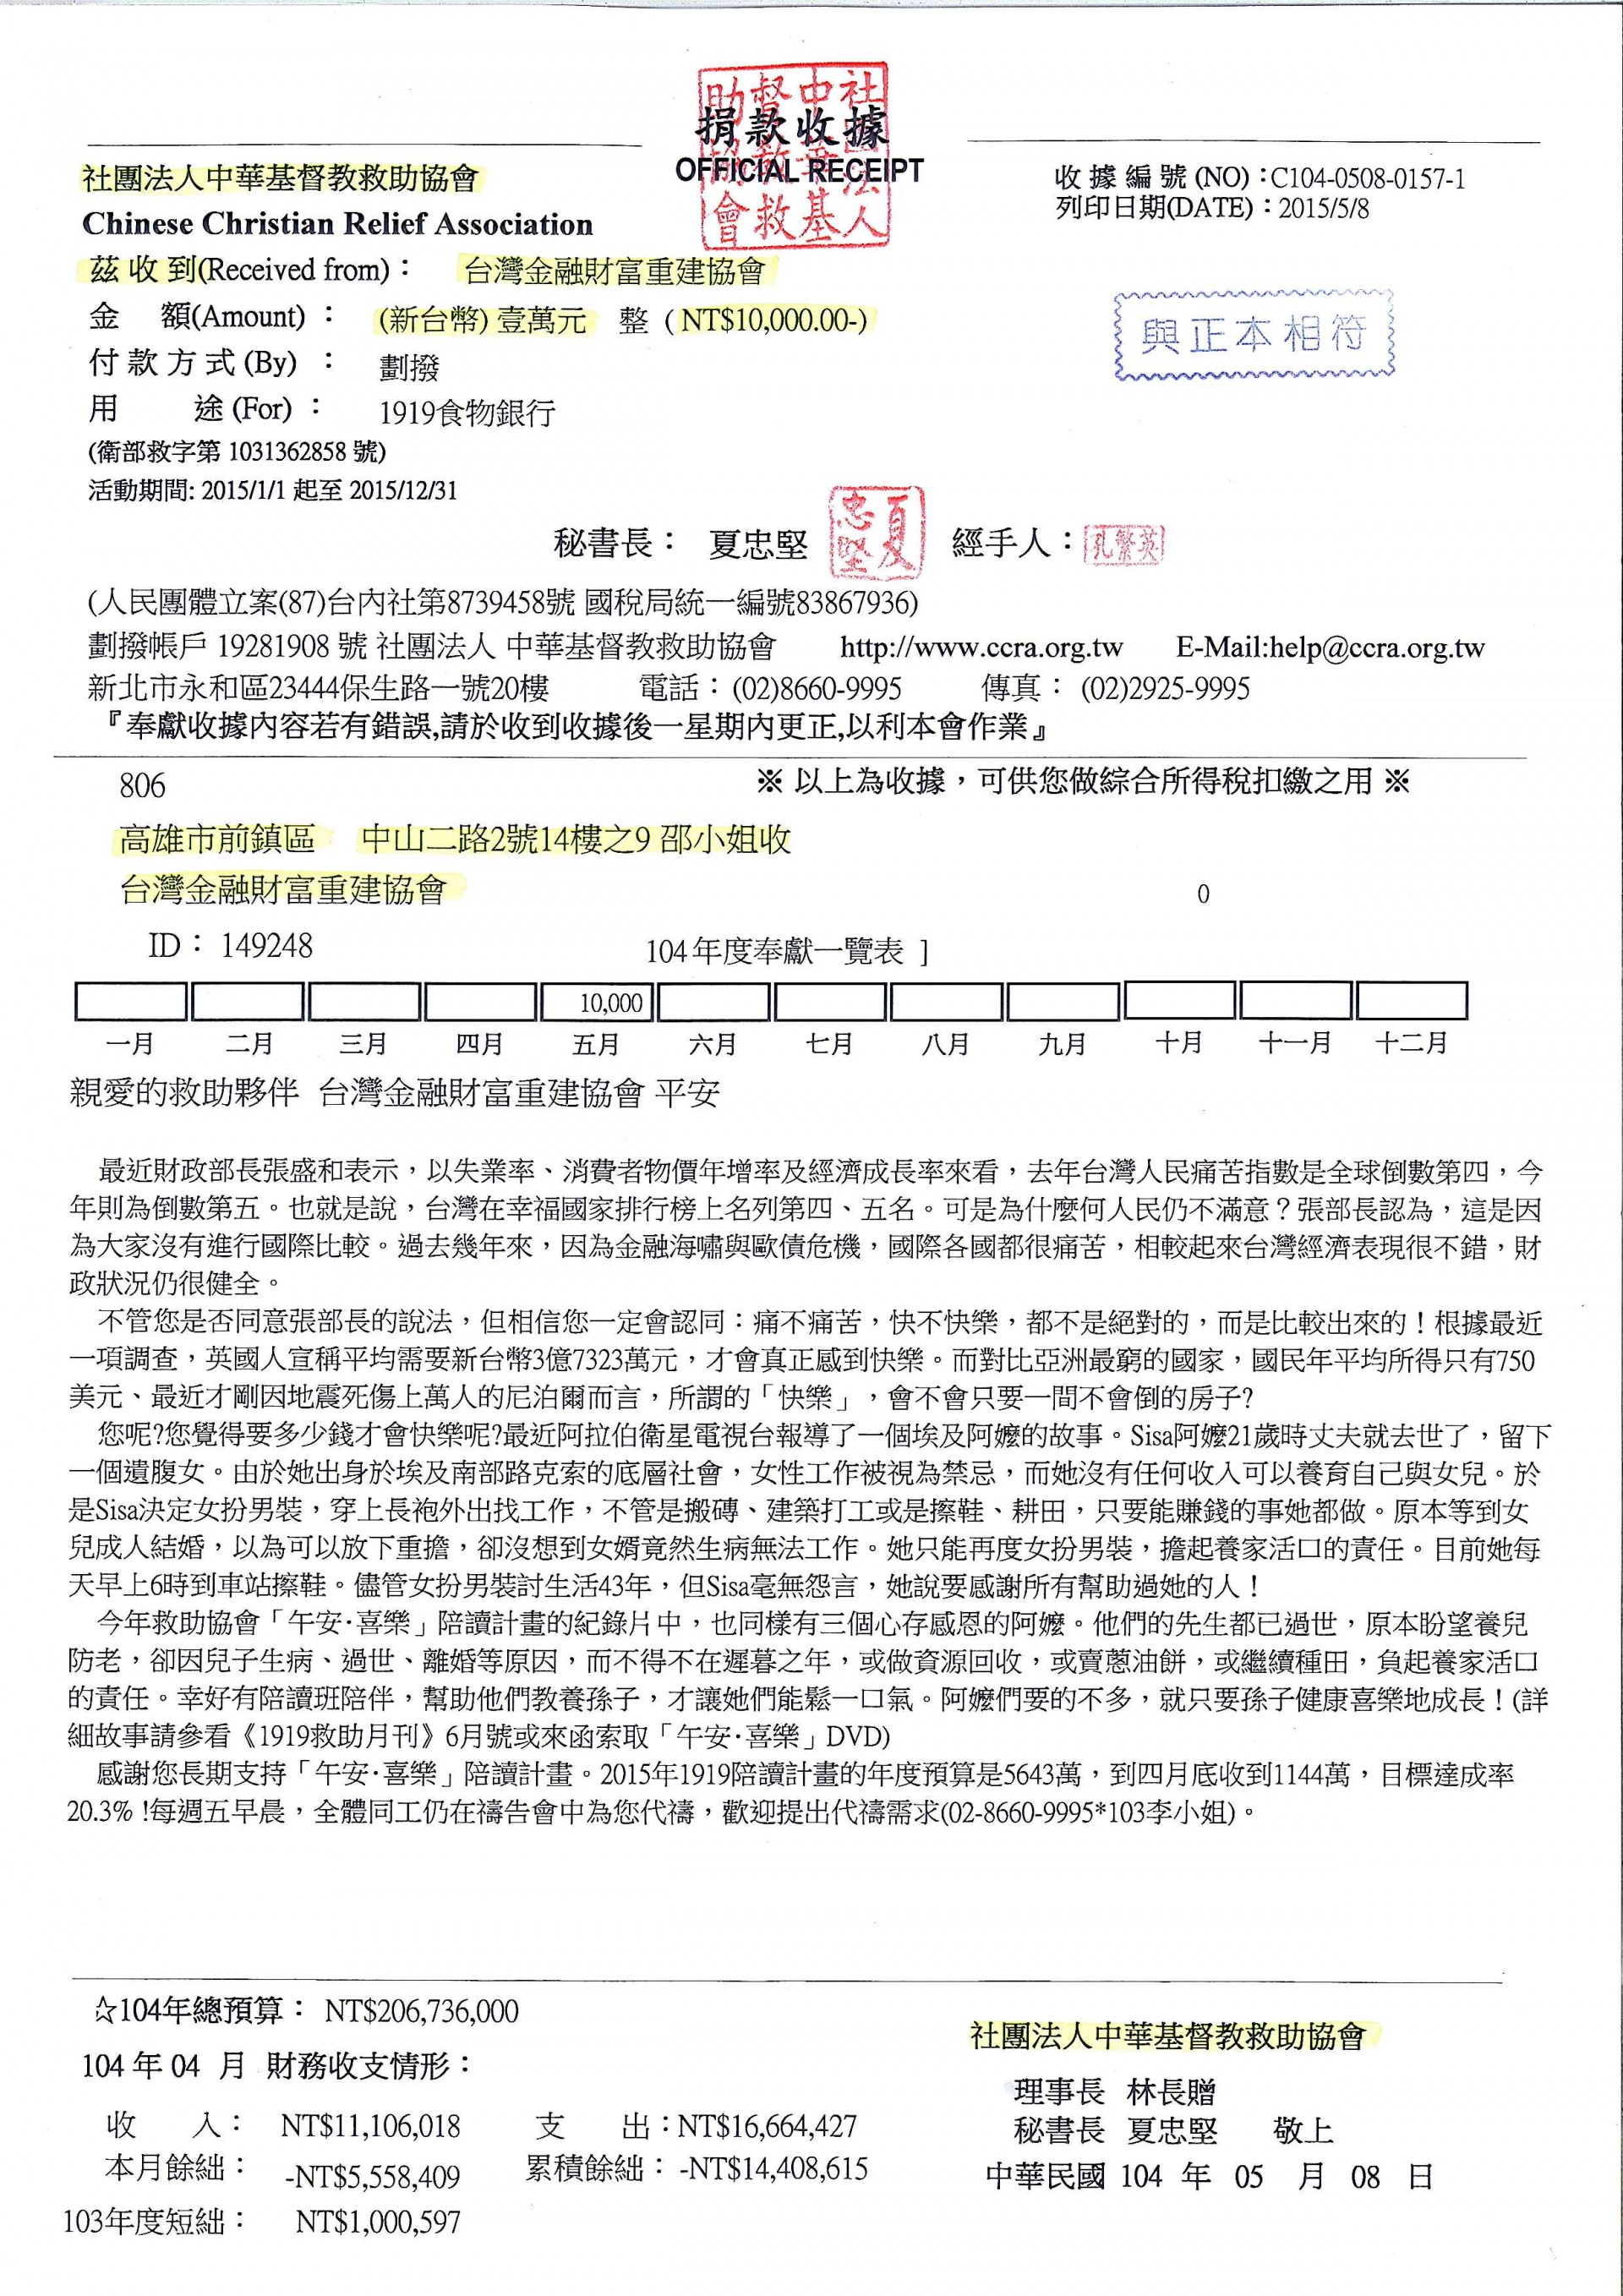 中華基督教救助協會-「1919社服與救助網絡」協助急難救助者